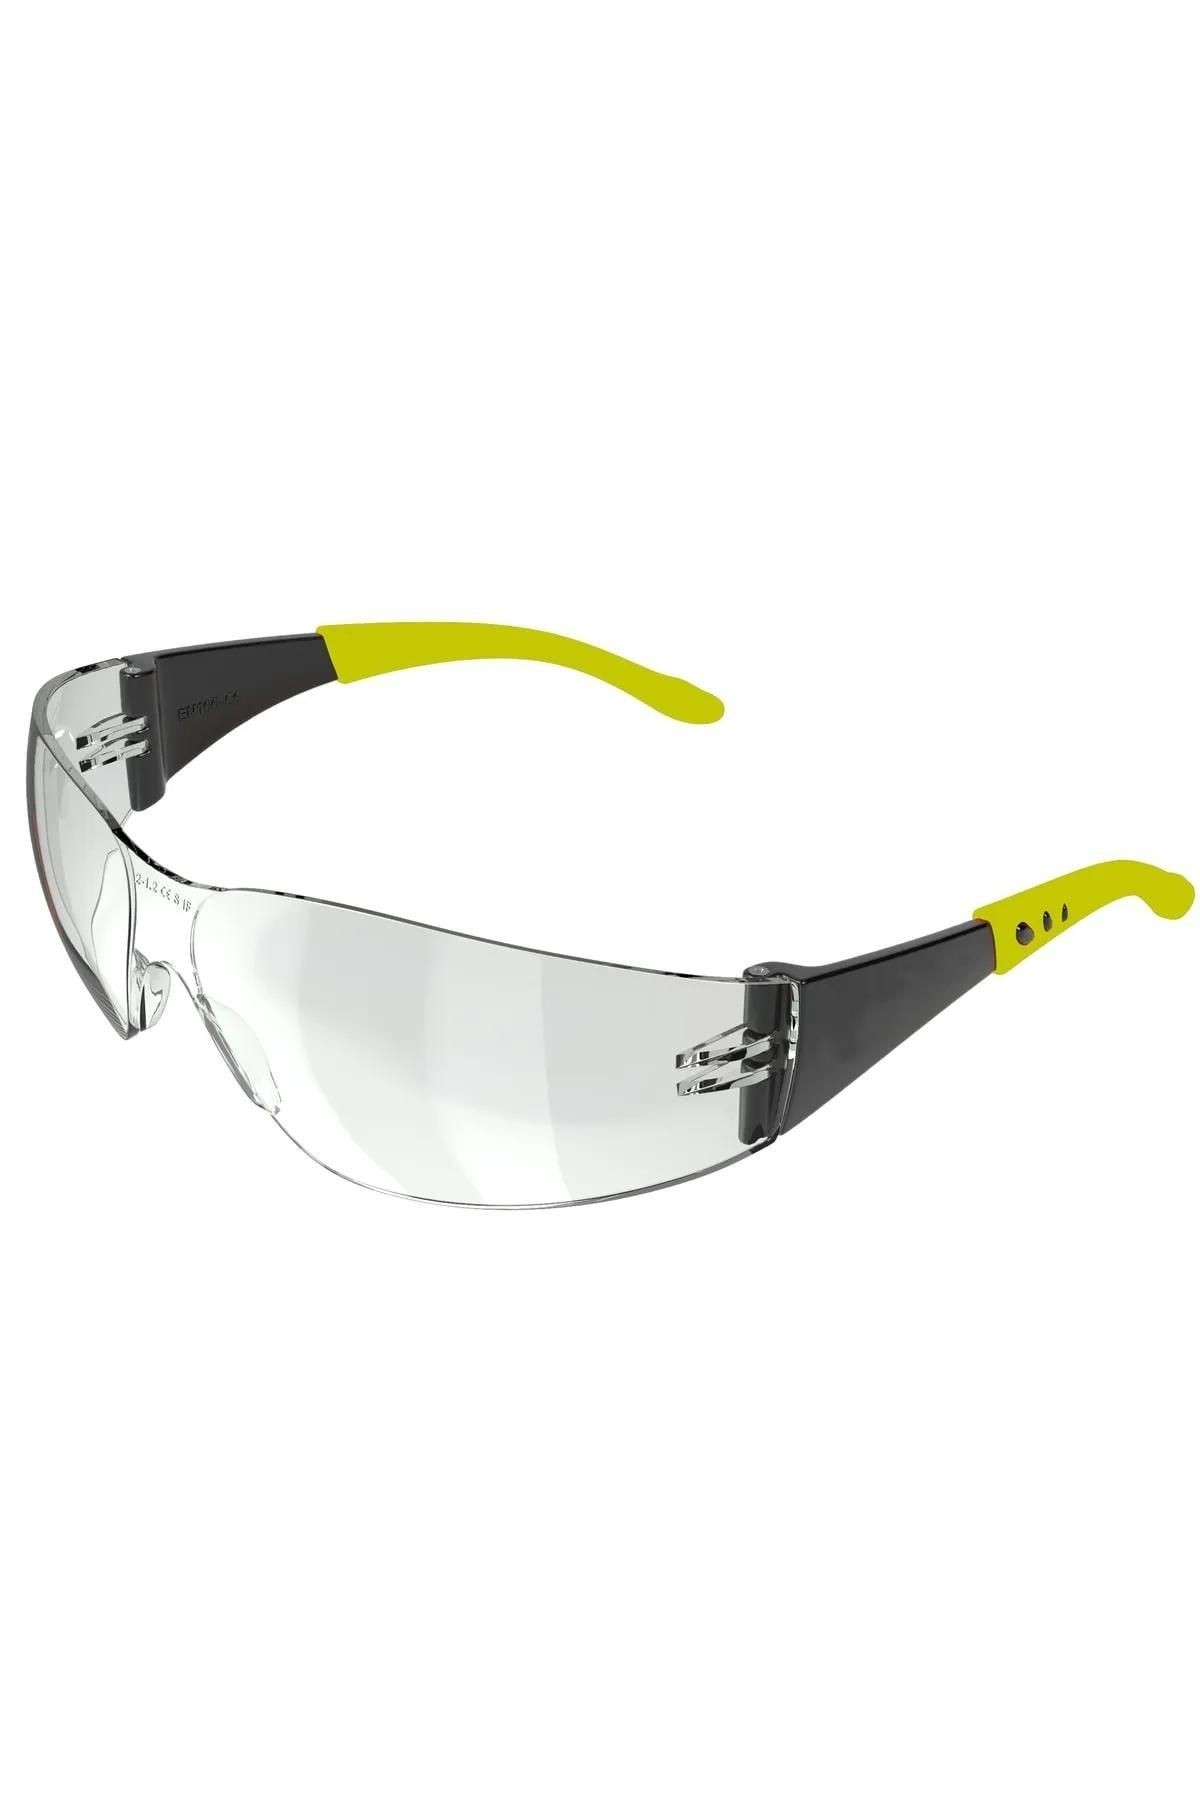 Baymax İş Güvenlik Gözlüğü Kaynak Koruyucu Gözlük S500 Dinamik Şeffaf